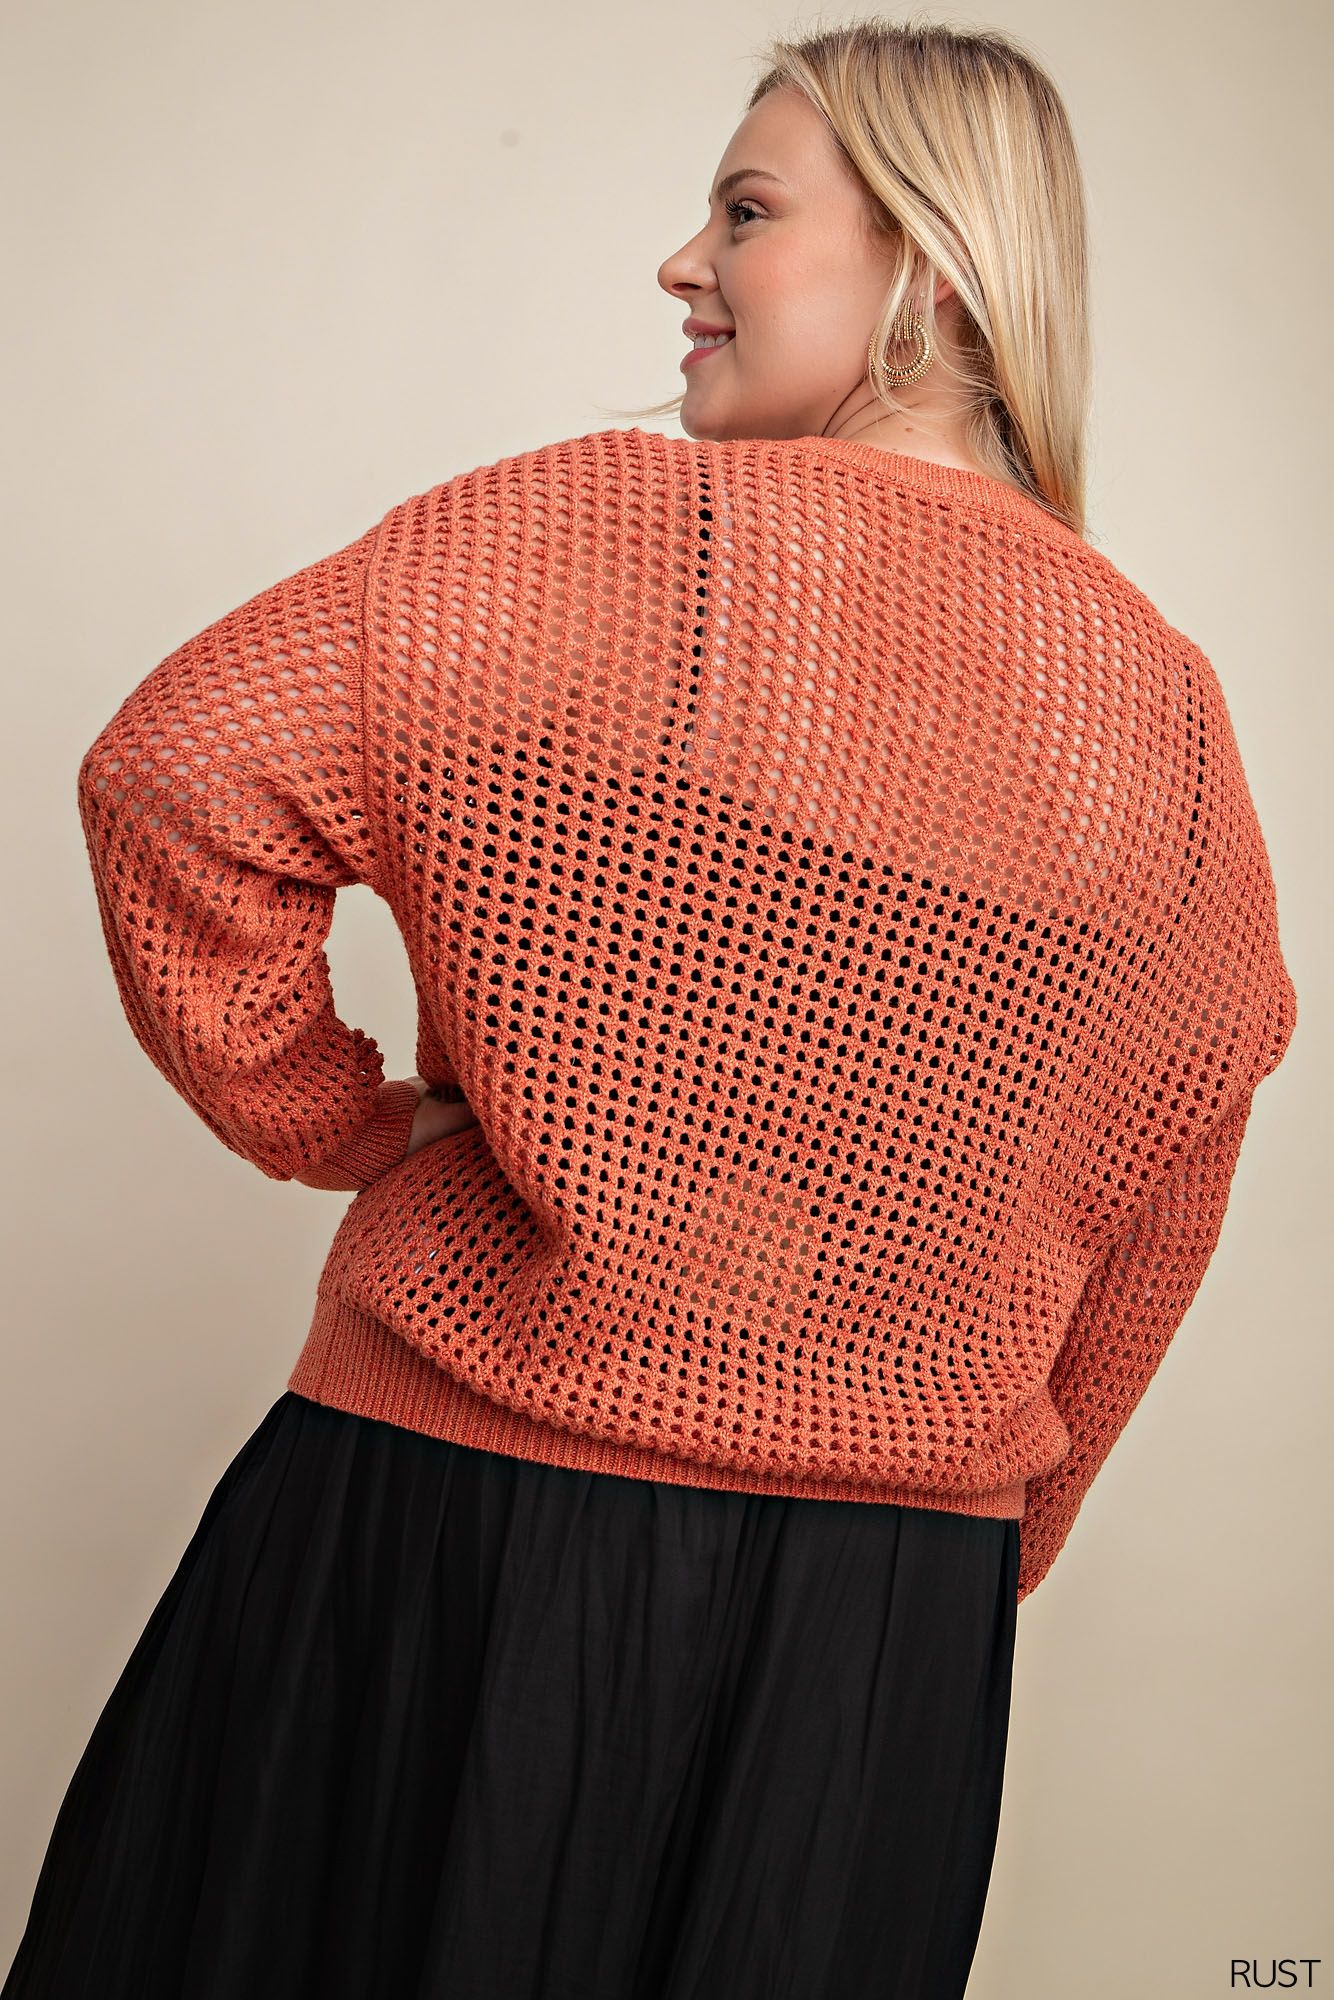 Soft Fish Net Style Sweater